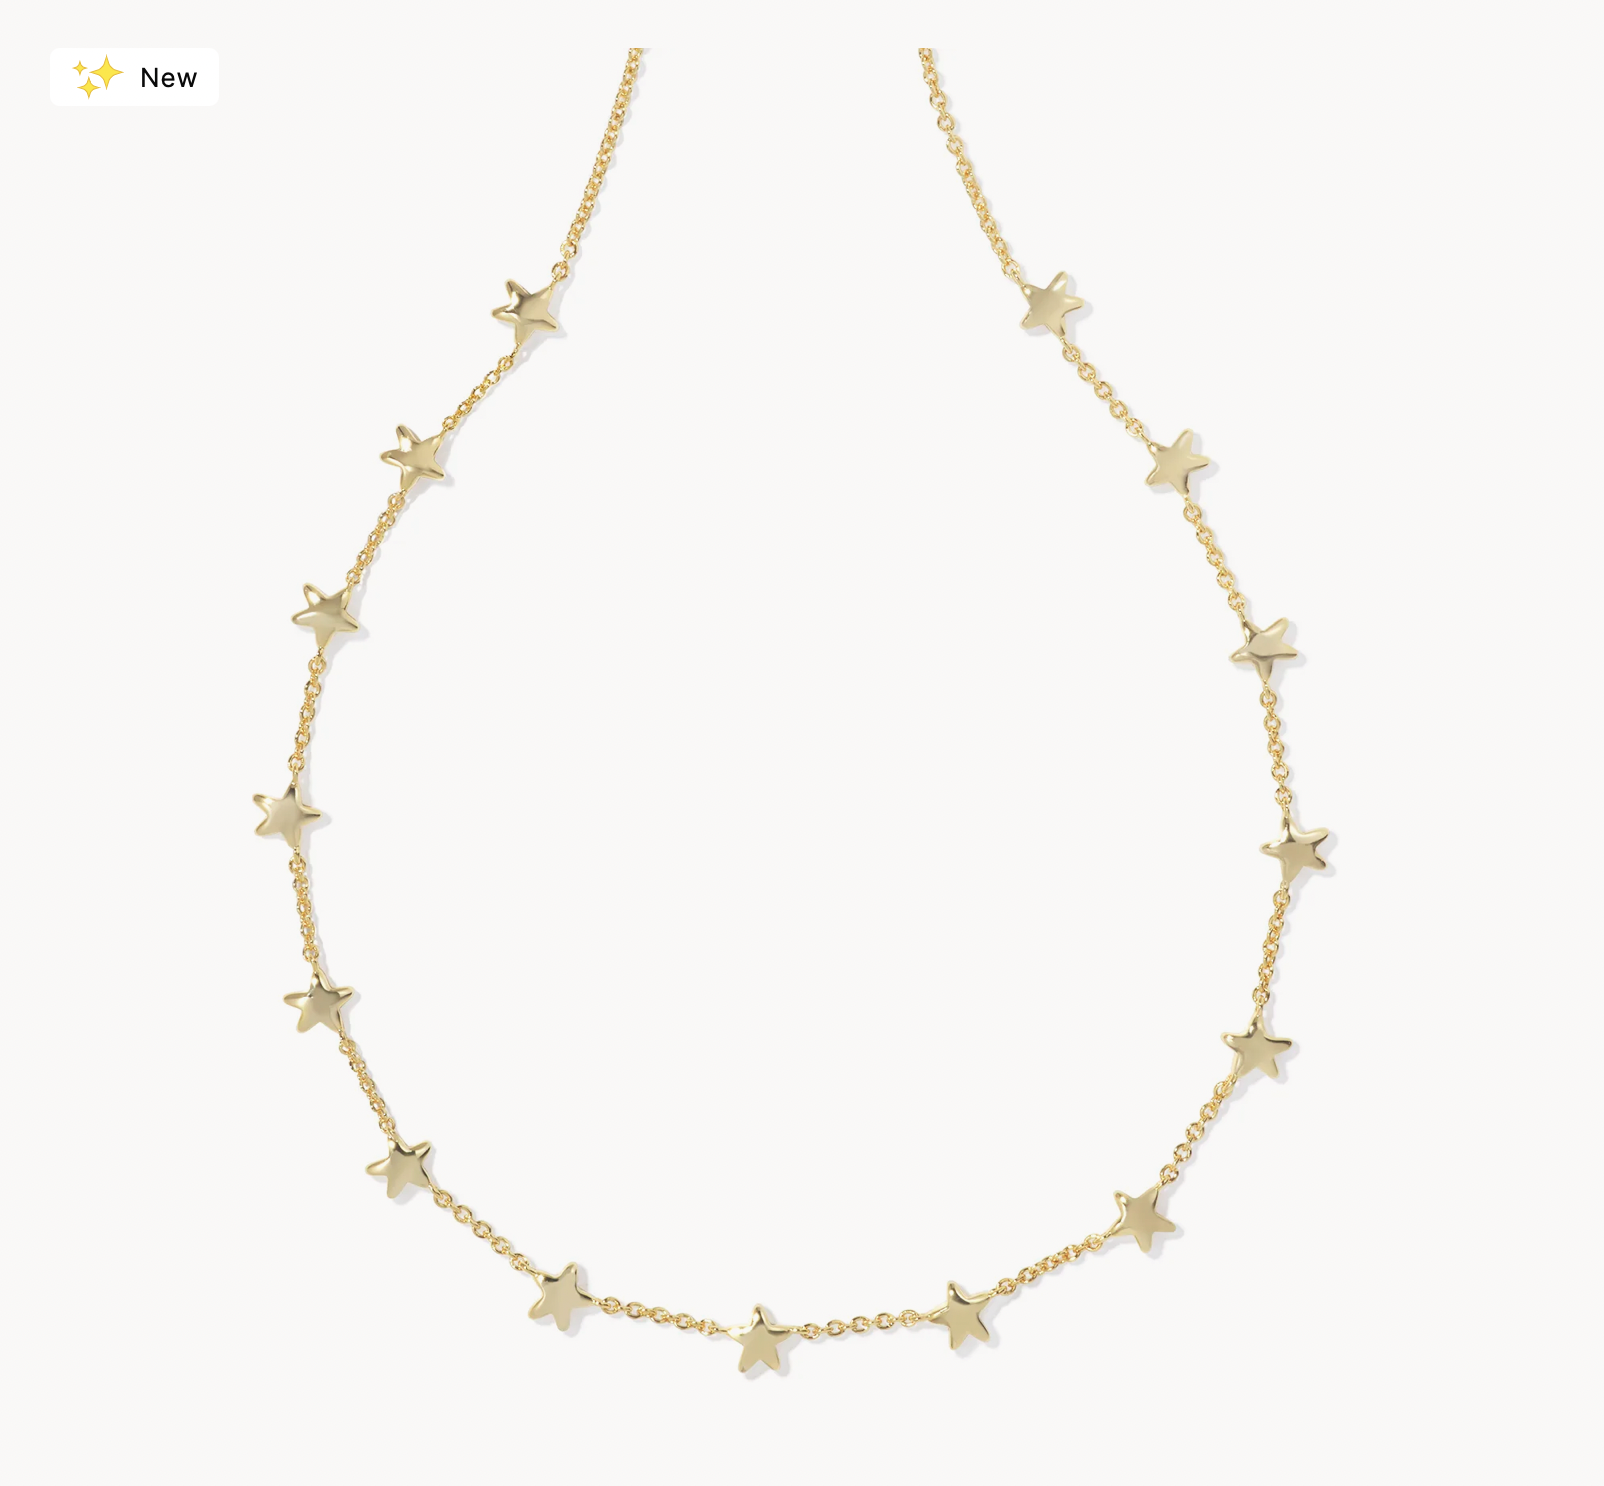 Sierra Star Rhod Chain Necklace